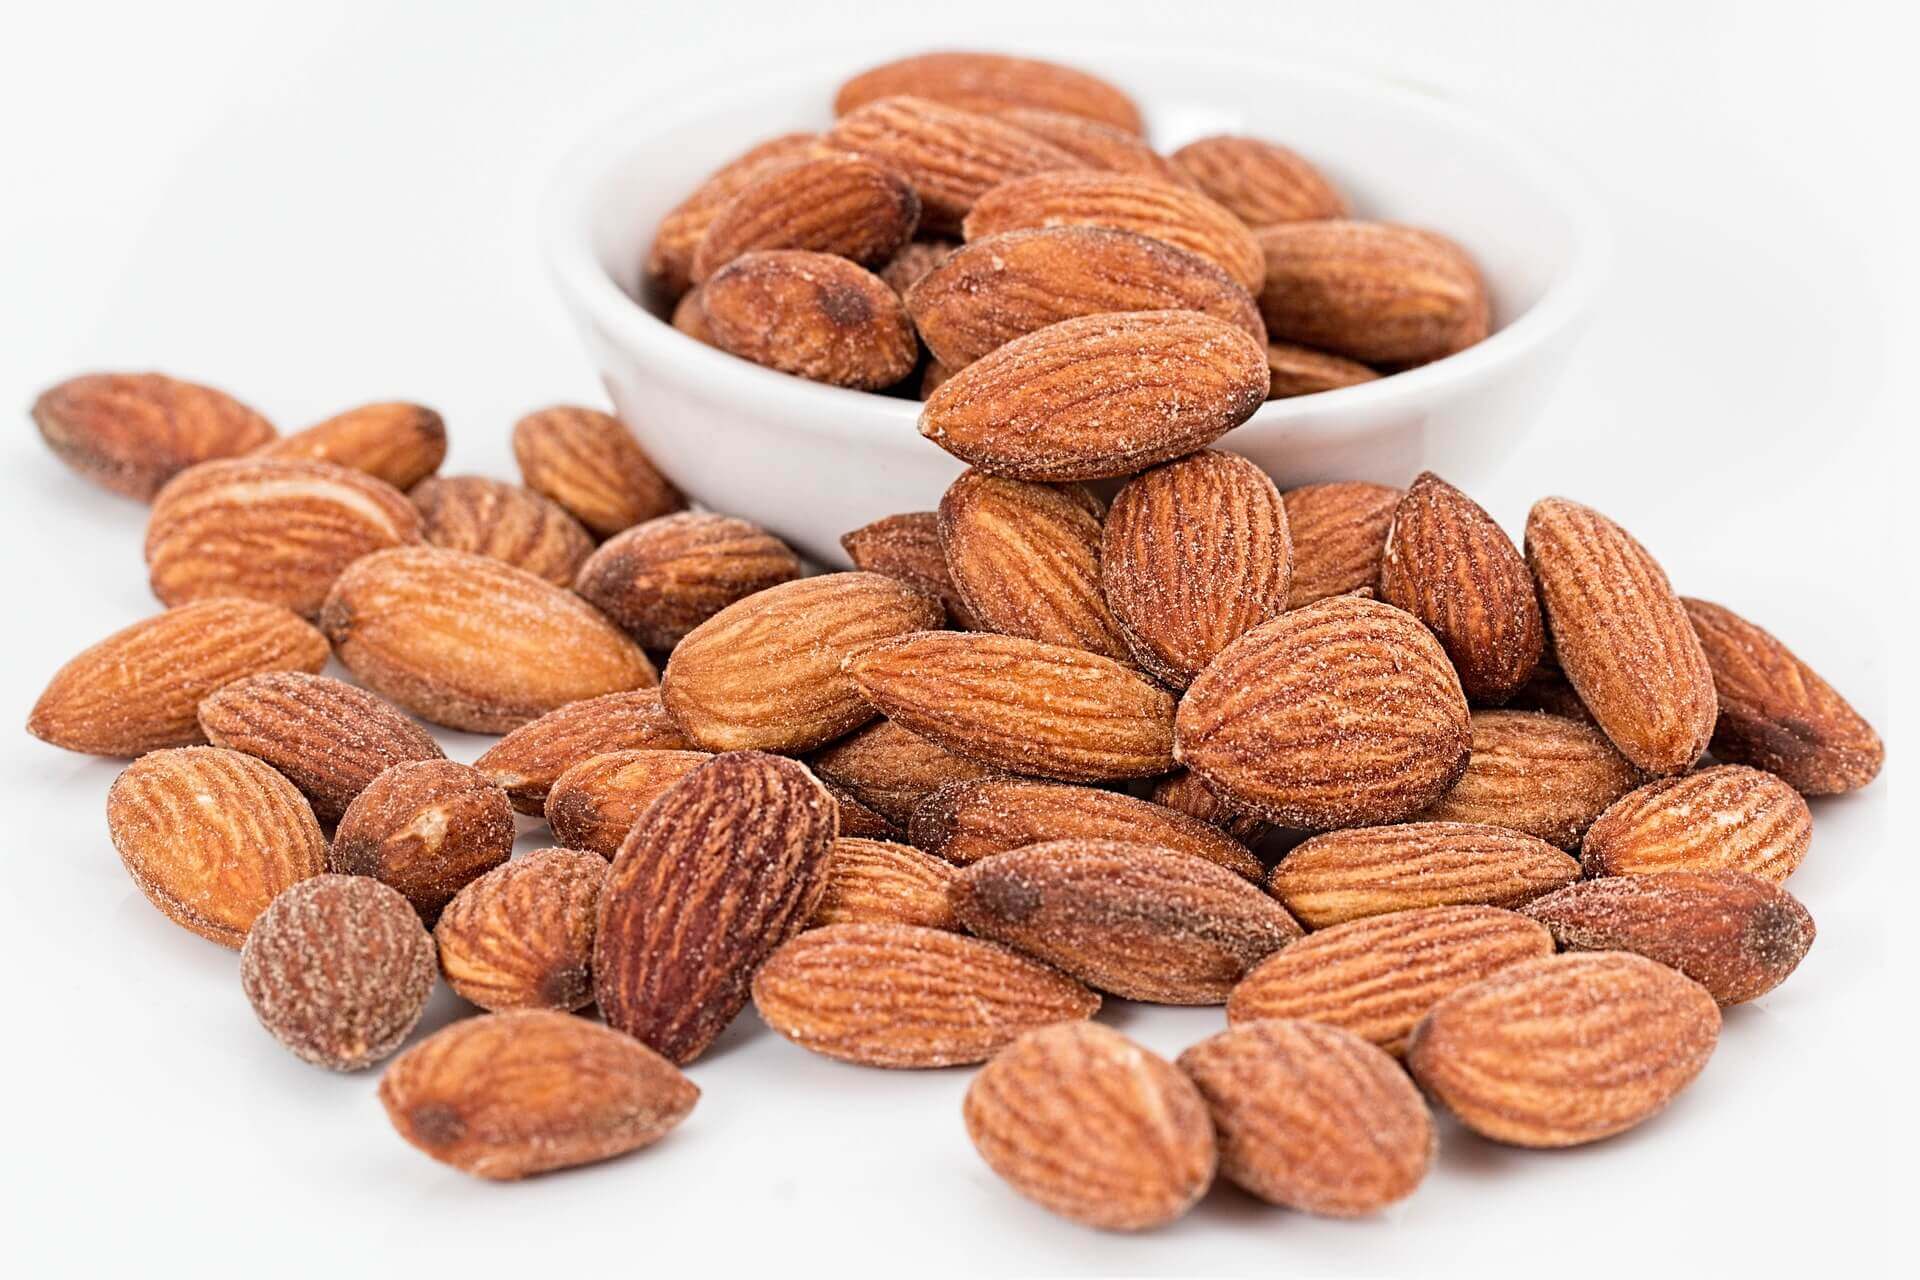 migdale almonds beneficii, calorii, valori nutritionale